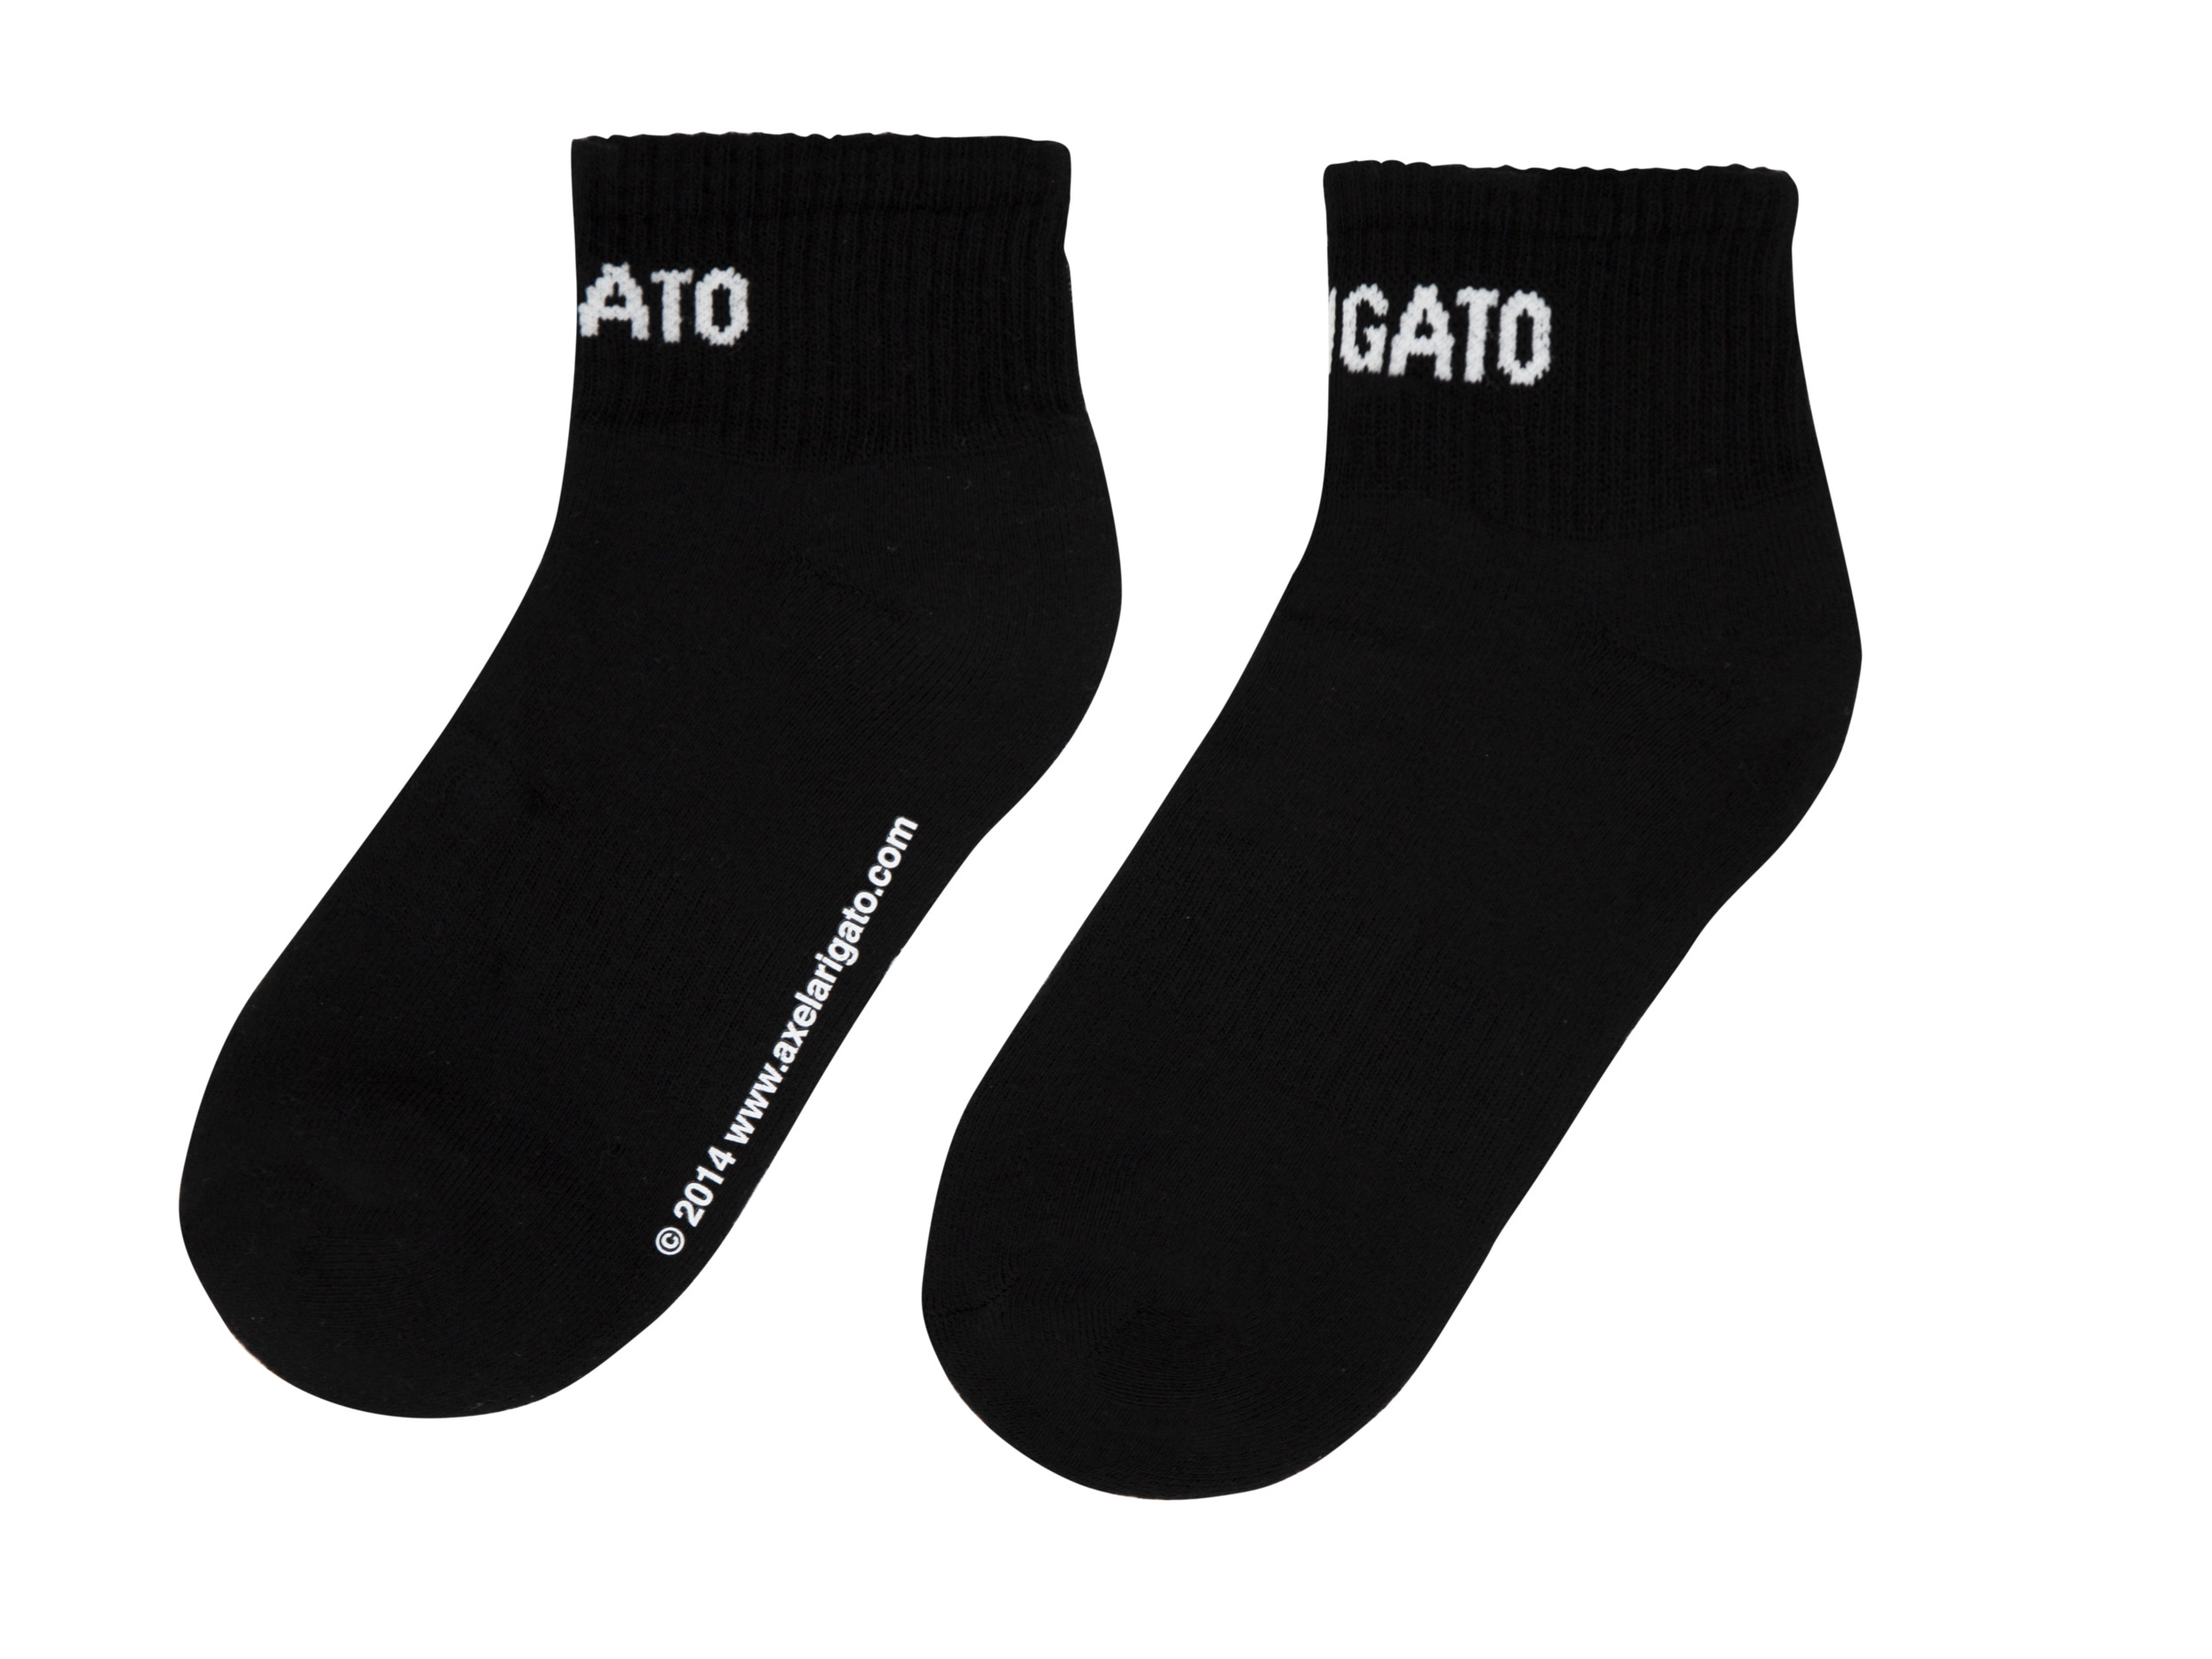 Arigato Logo Ankle Socks - 1